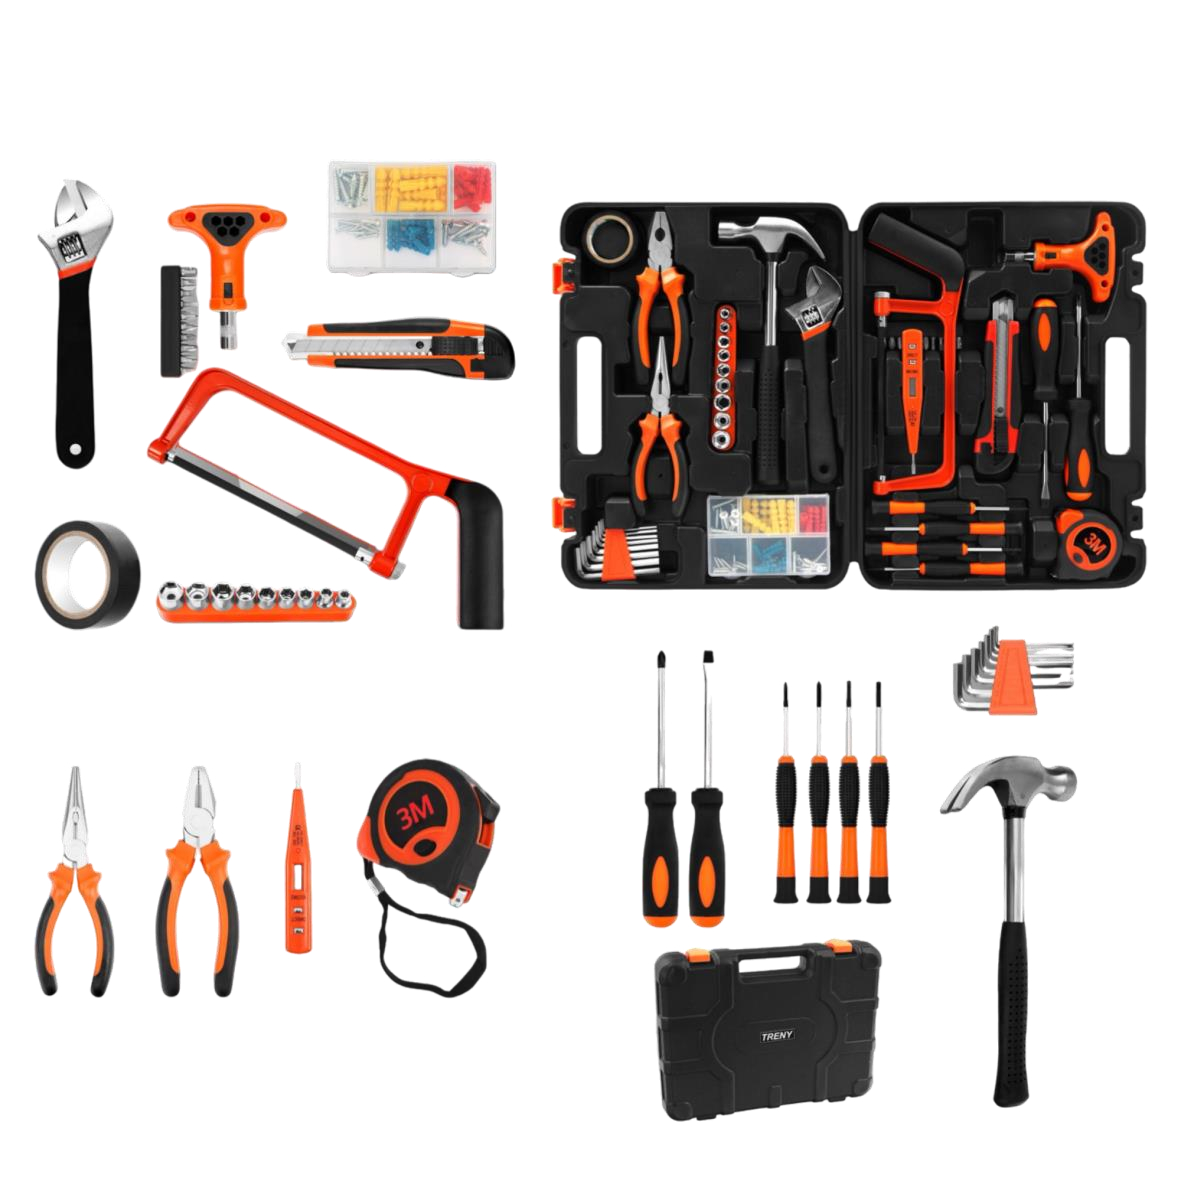 Bộ dụng cụ sửa chửa 82 món, đầy đủ công dụng cụ, phù hợp cho gia đình và văn phòng, phối màu đen cam sang trọng - Hộp dụng cụ 82 món